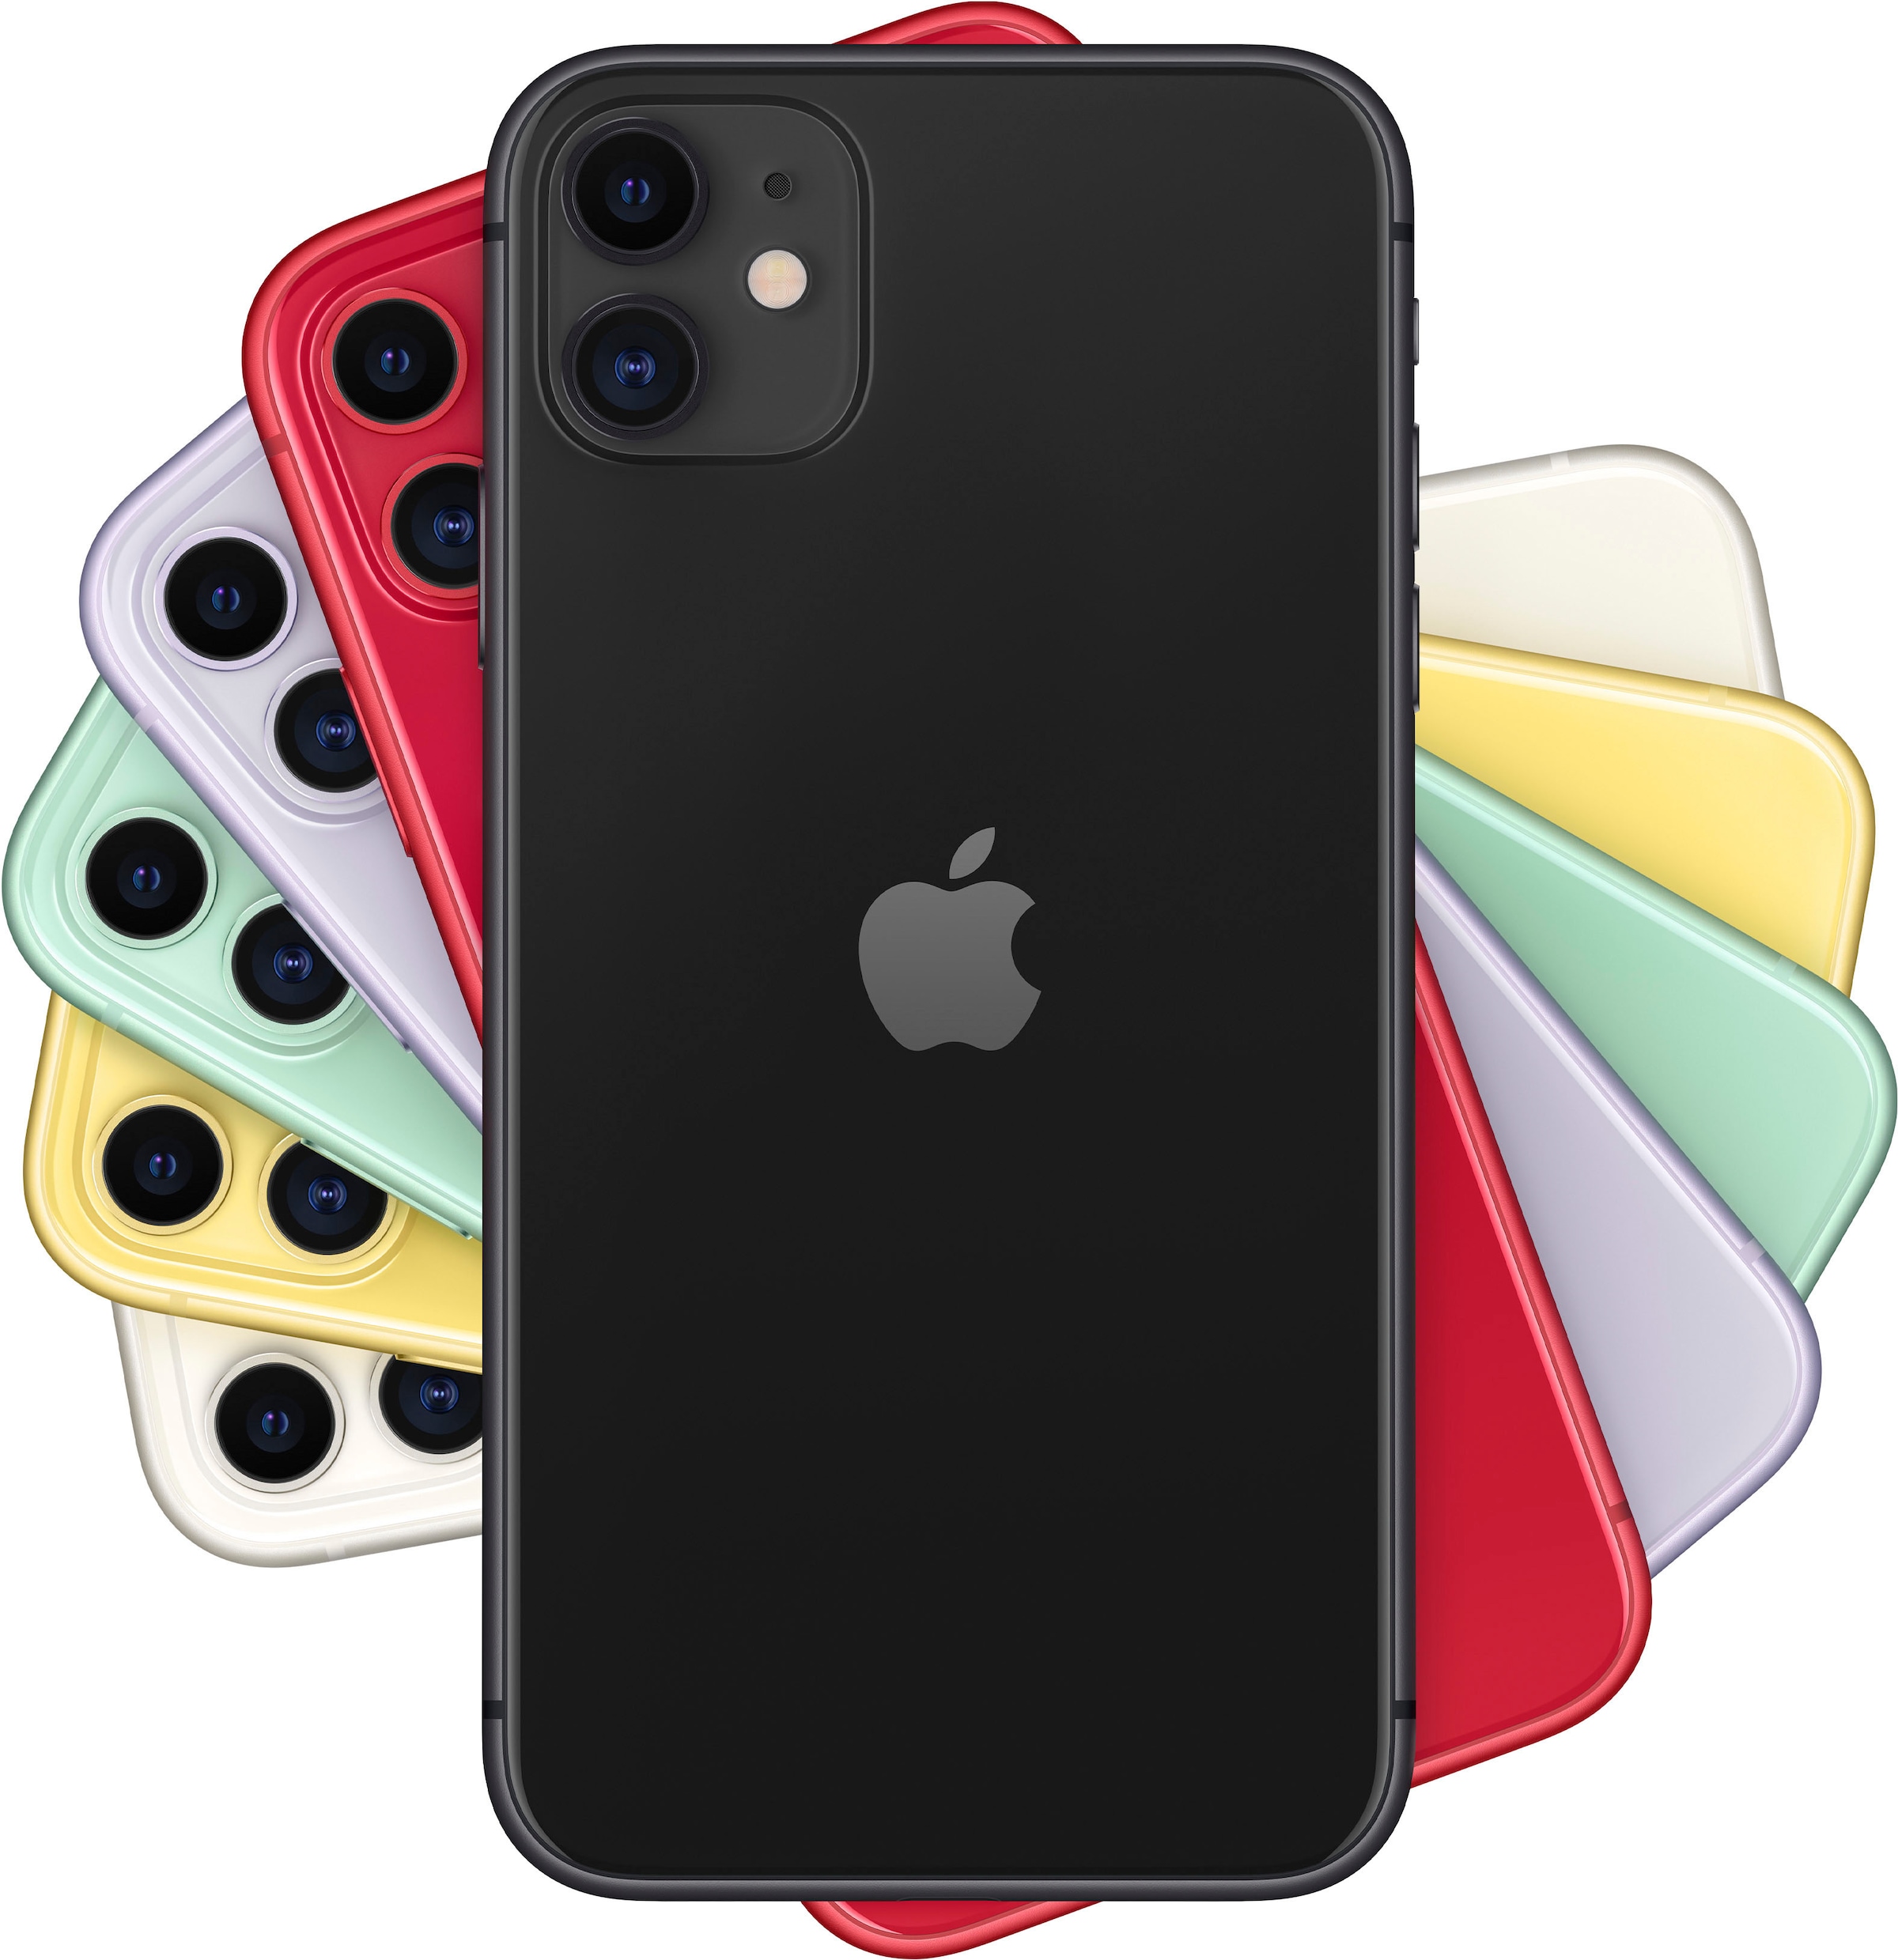 Apple Smartphone »iPhone 11«, black, 15,5 cm/6,1 Zoll, 64 GB Speicherplatz, 12 MP Kamera, ohne Strom-Adapter und Kopfhörer